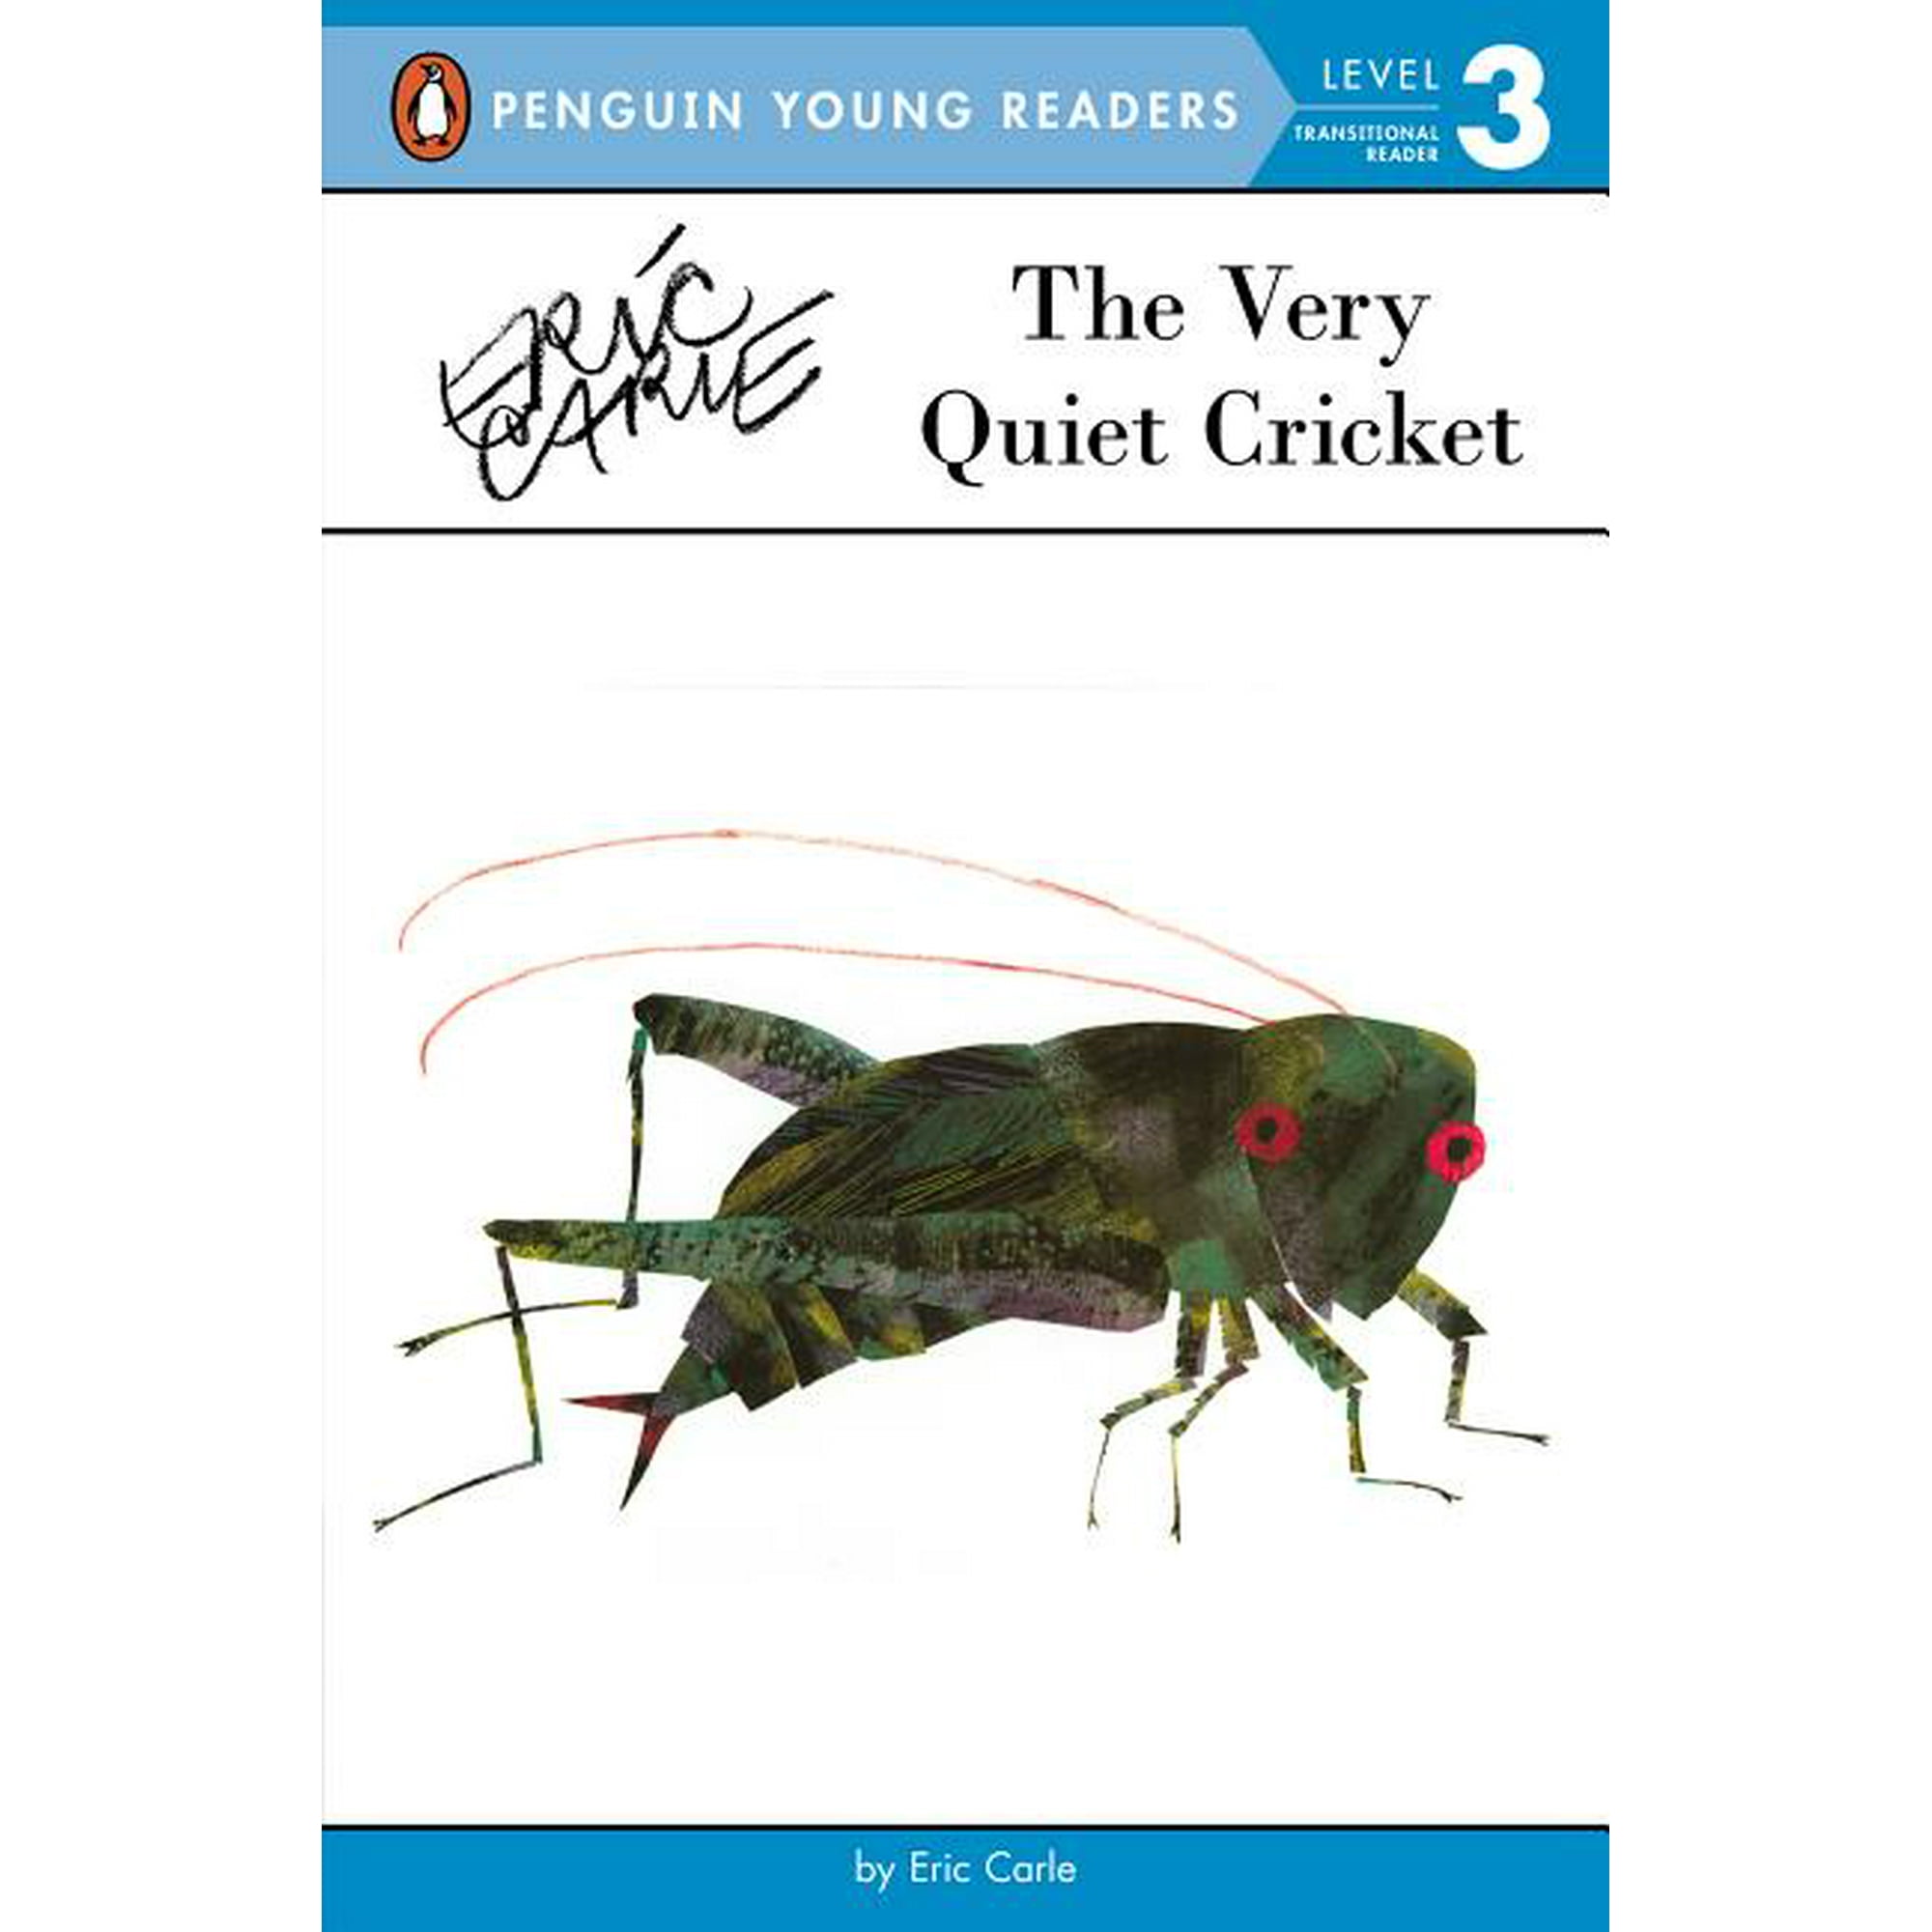 so quiet cricket cricket